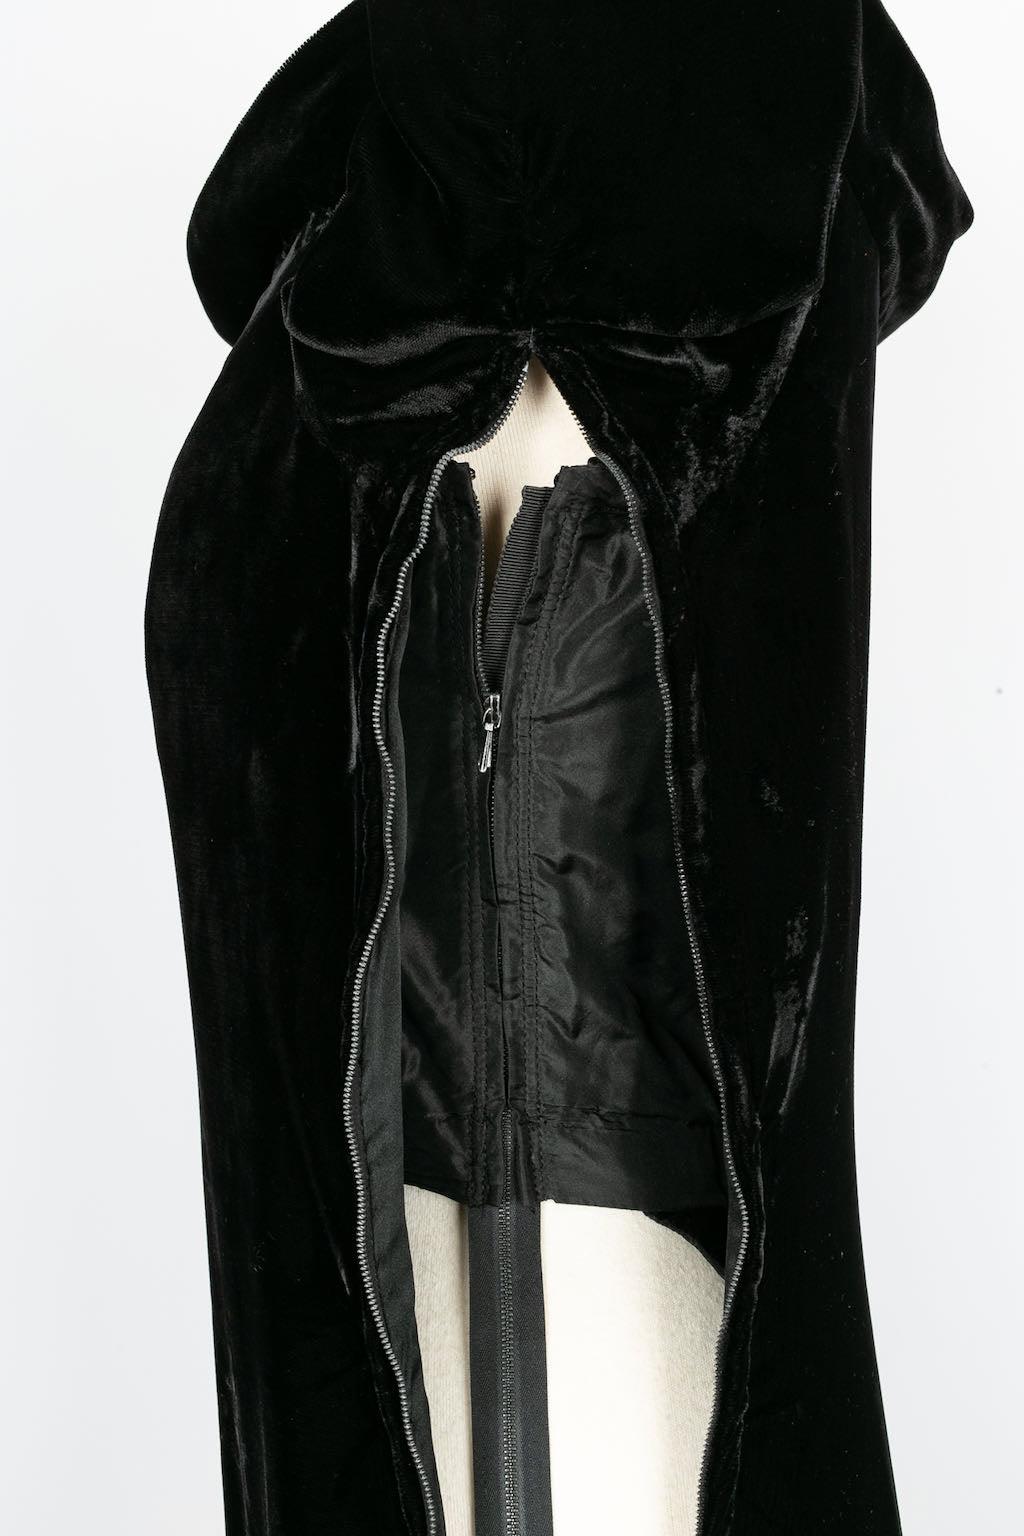 Yves Saint Laurent Haute Couture Black Silk Velvet Dress, 1986 For Sale 1